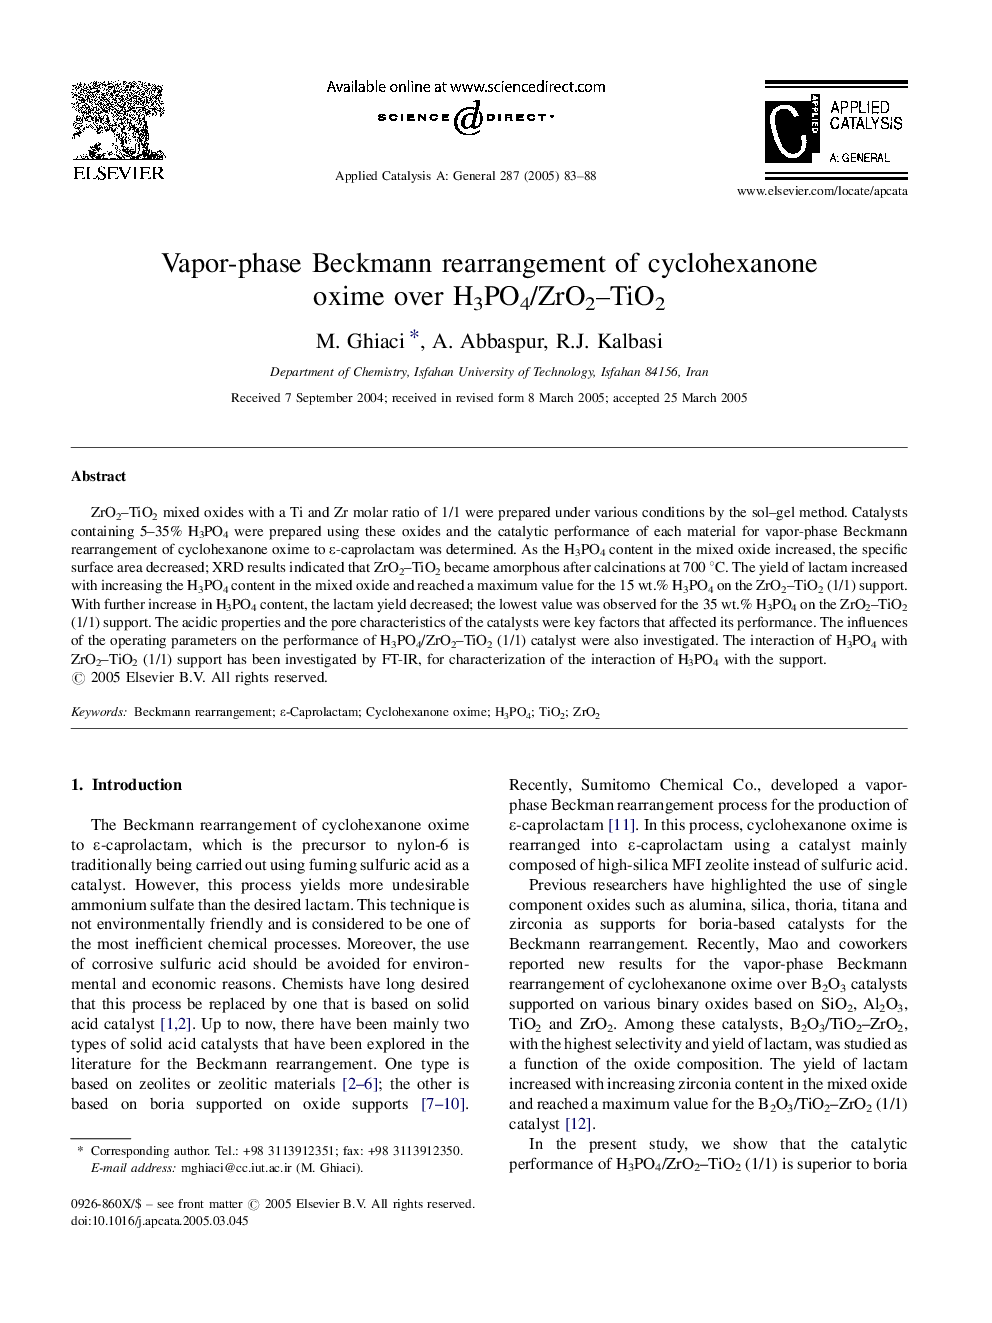 Vapor-phase Beckmann rearrangement of cyclohexanone oxime over H3PO4/ZrO2-TiO2